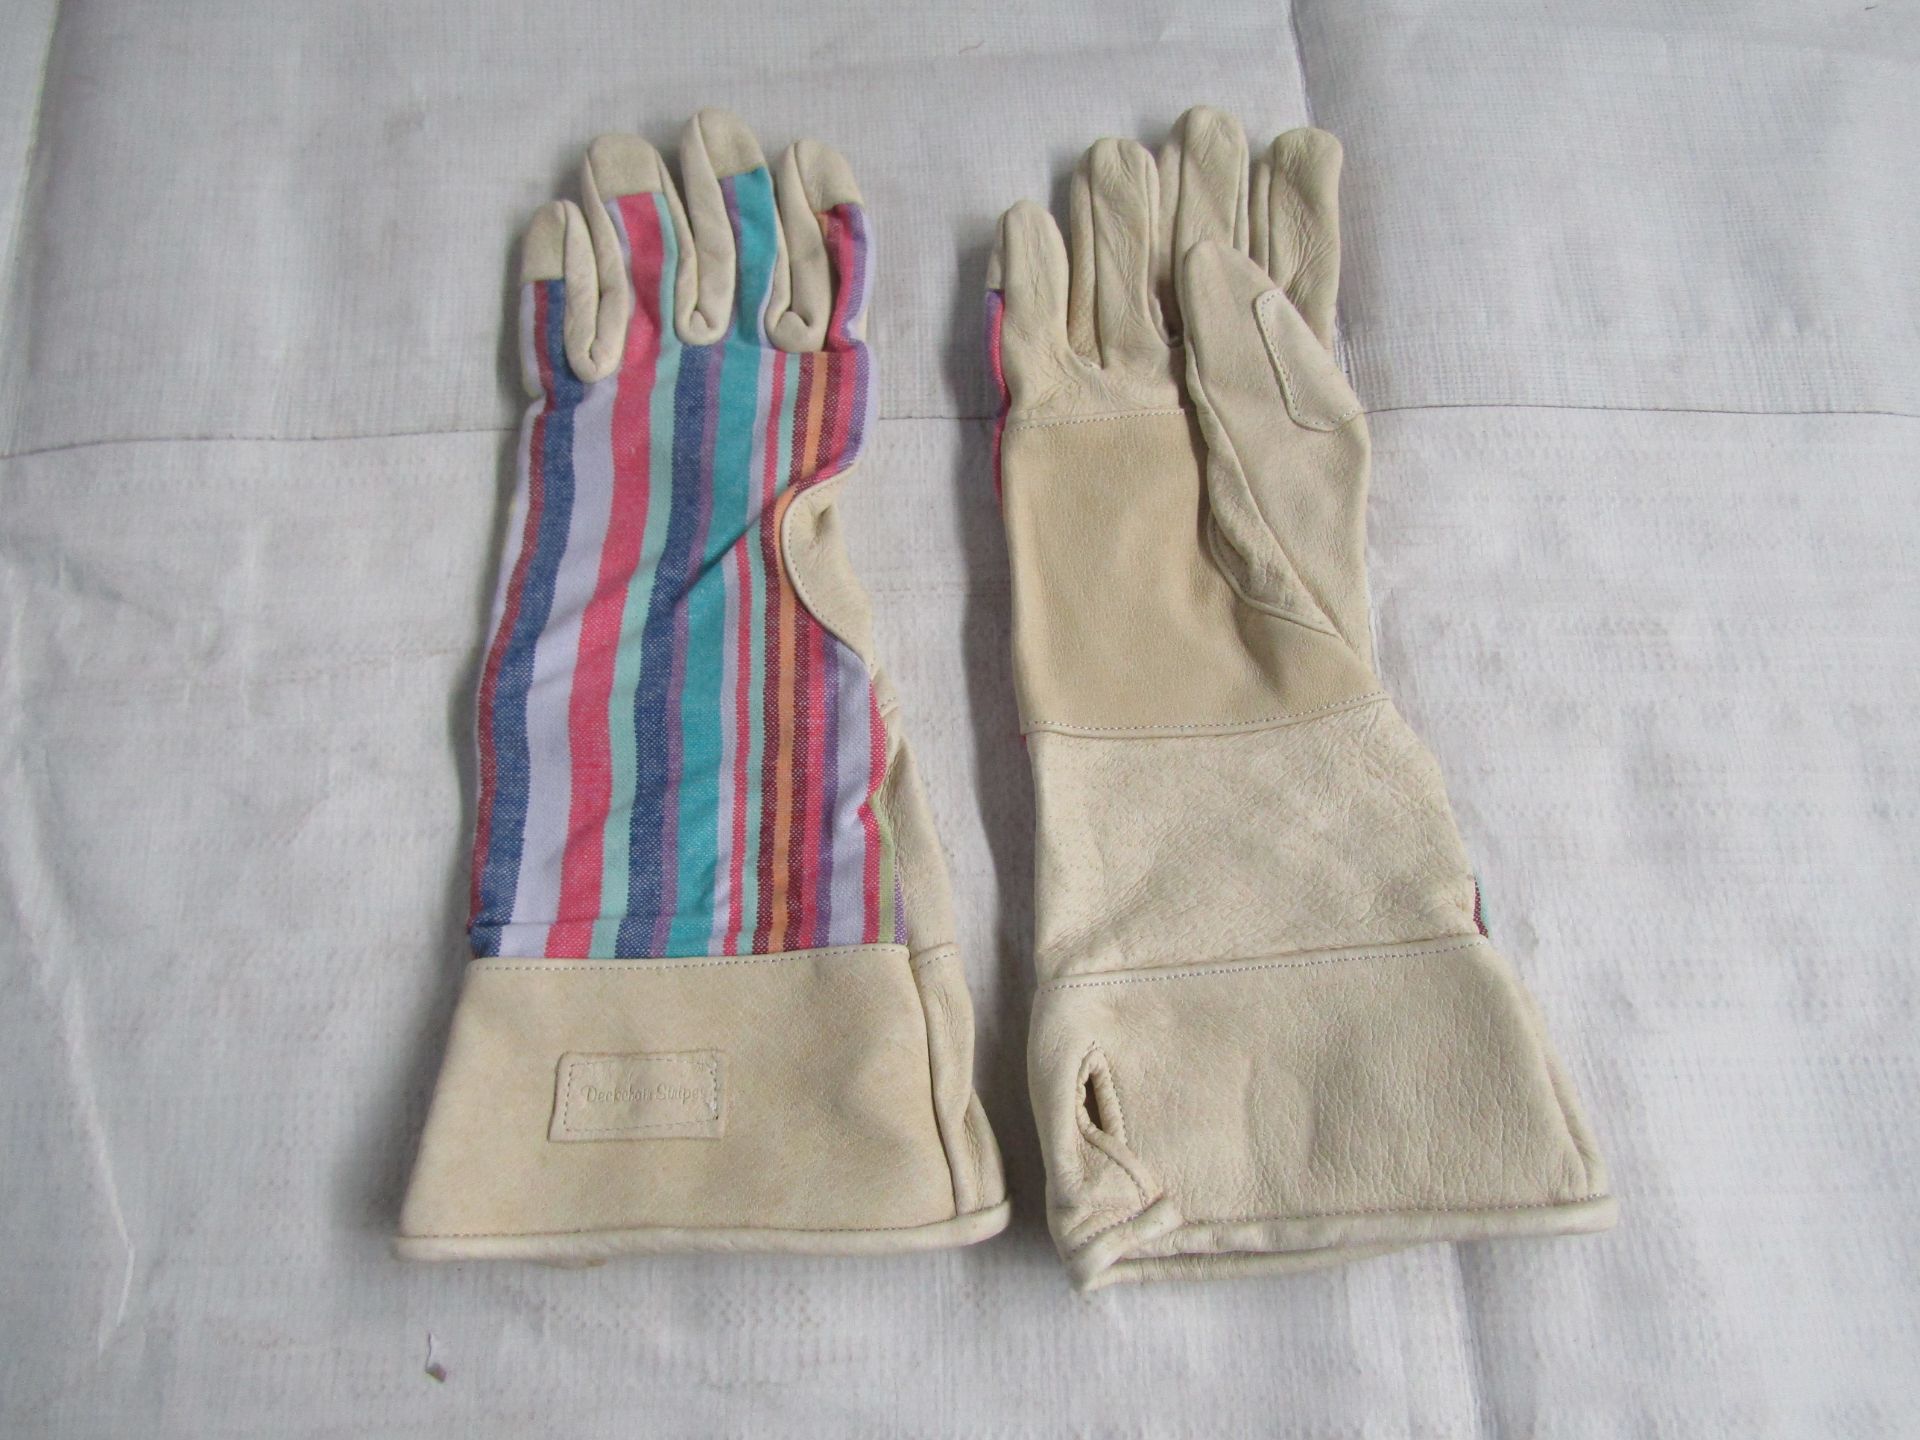 2X Deckchain Stripes - Rainbow Gaunt Gardening Gloves - Size M/L - New & Packaged.